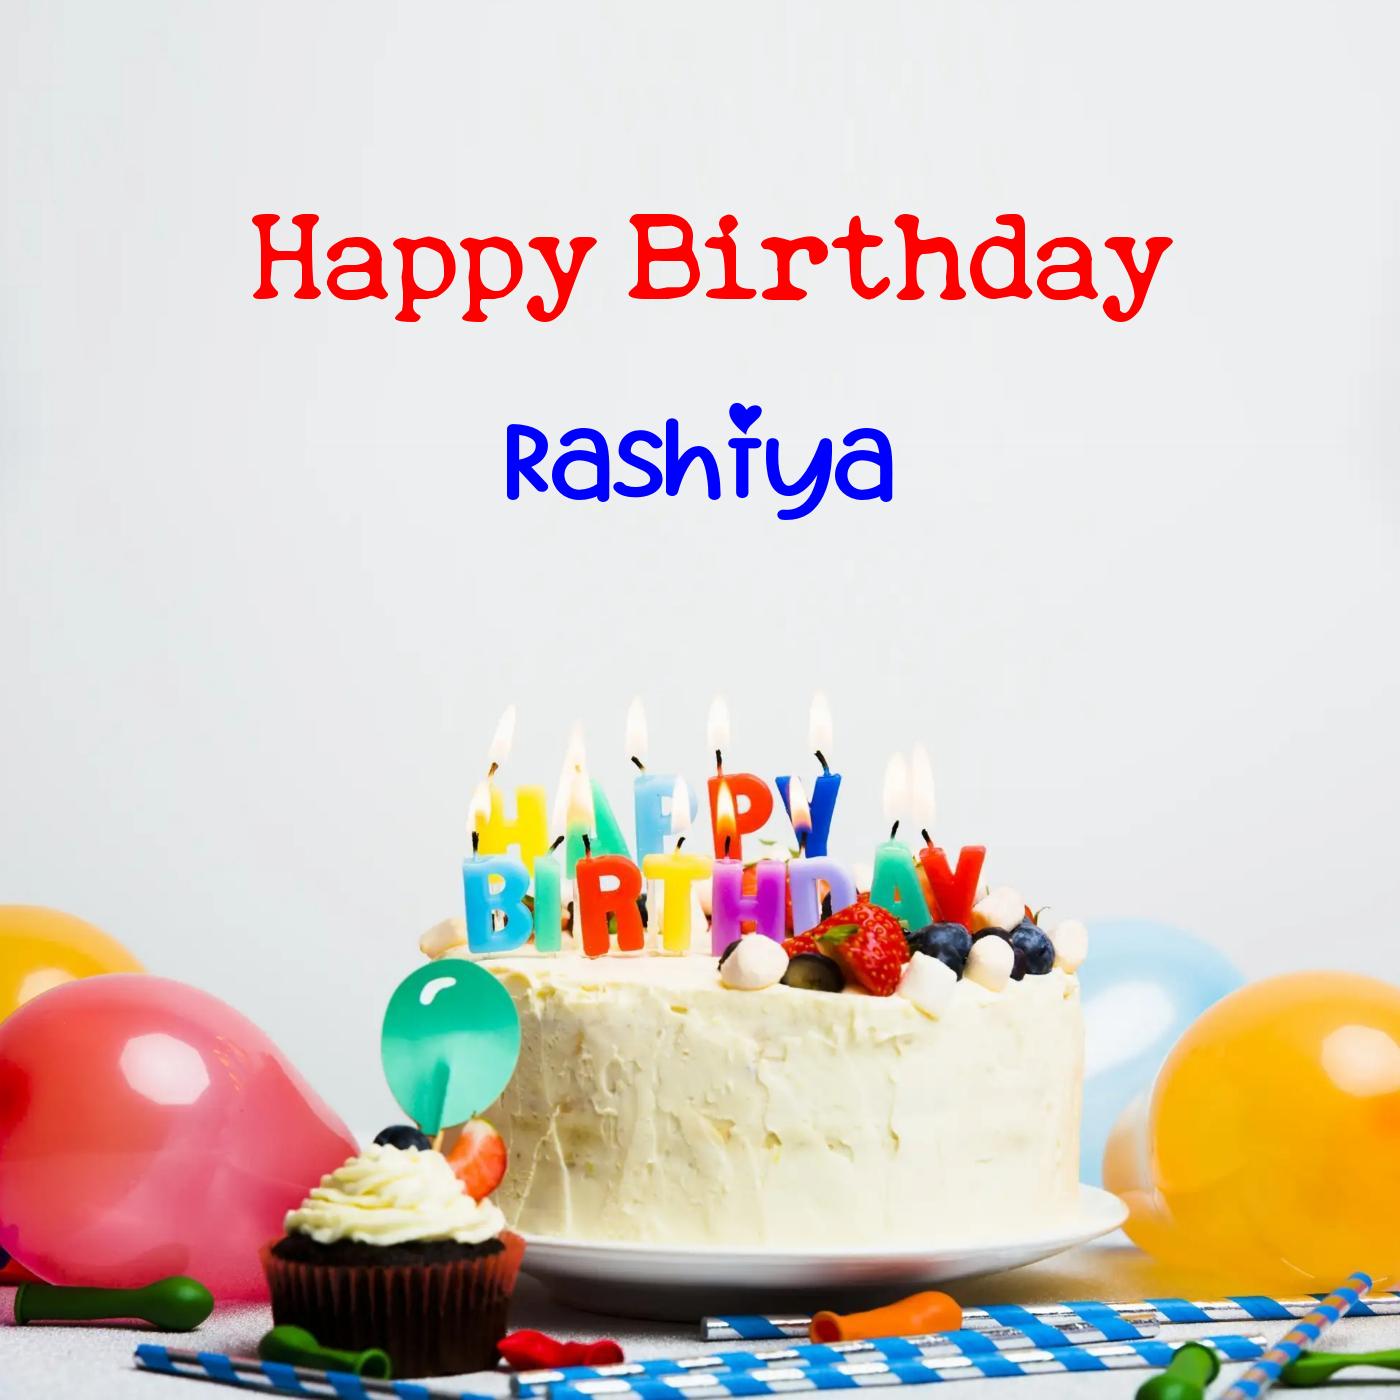 Happy Birthday Rashiya Cake Balloons Card